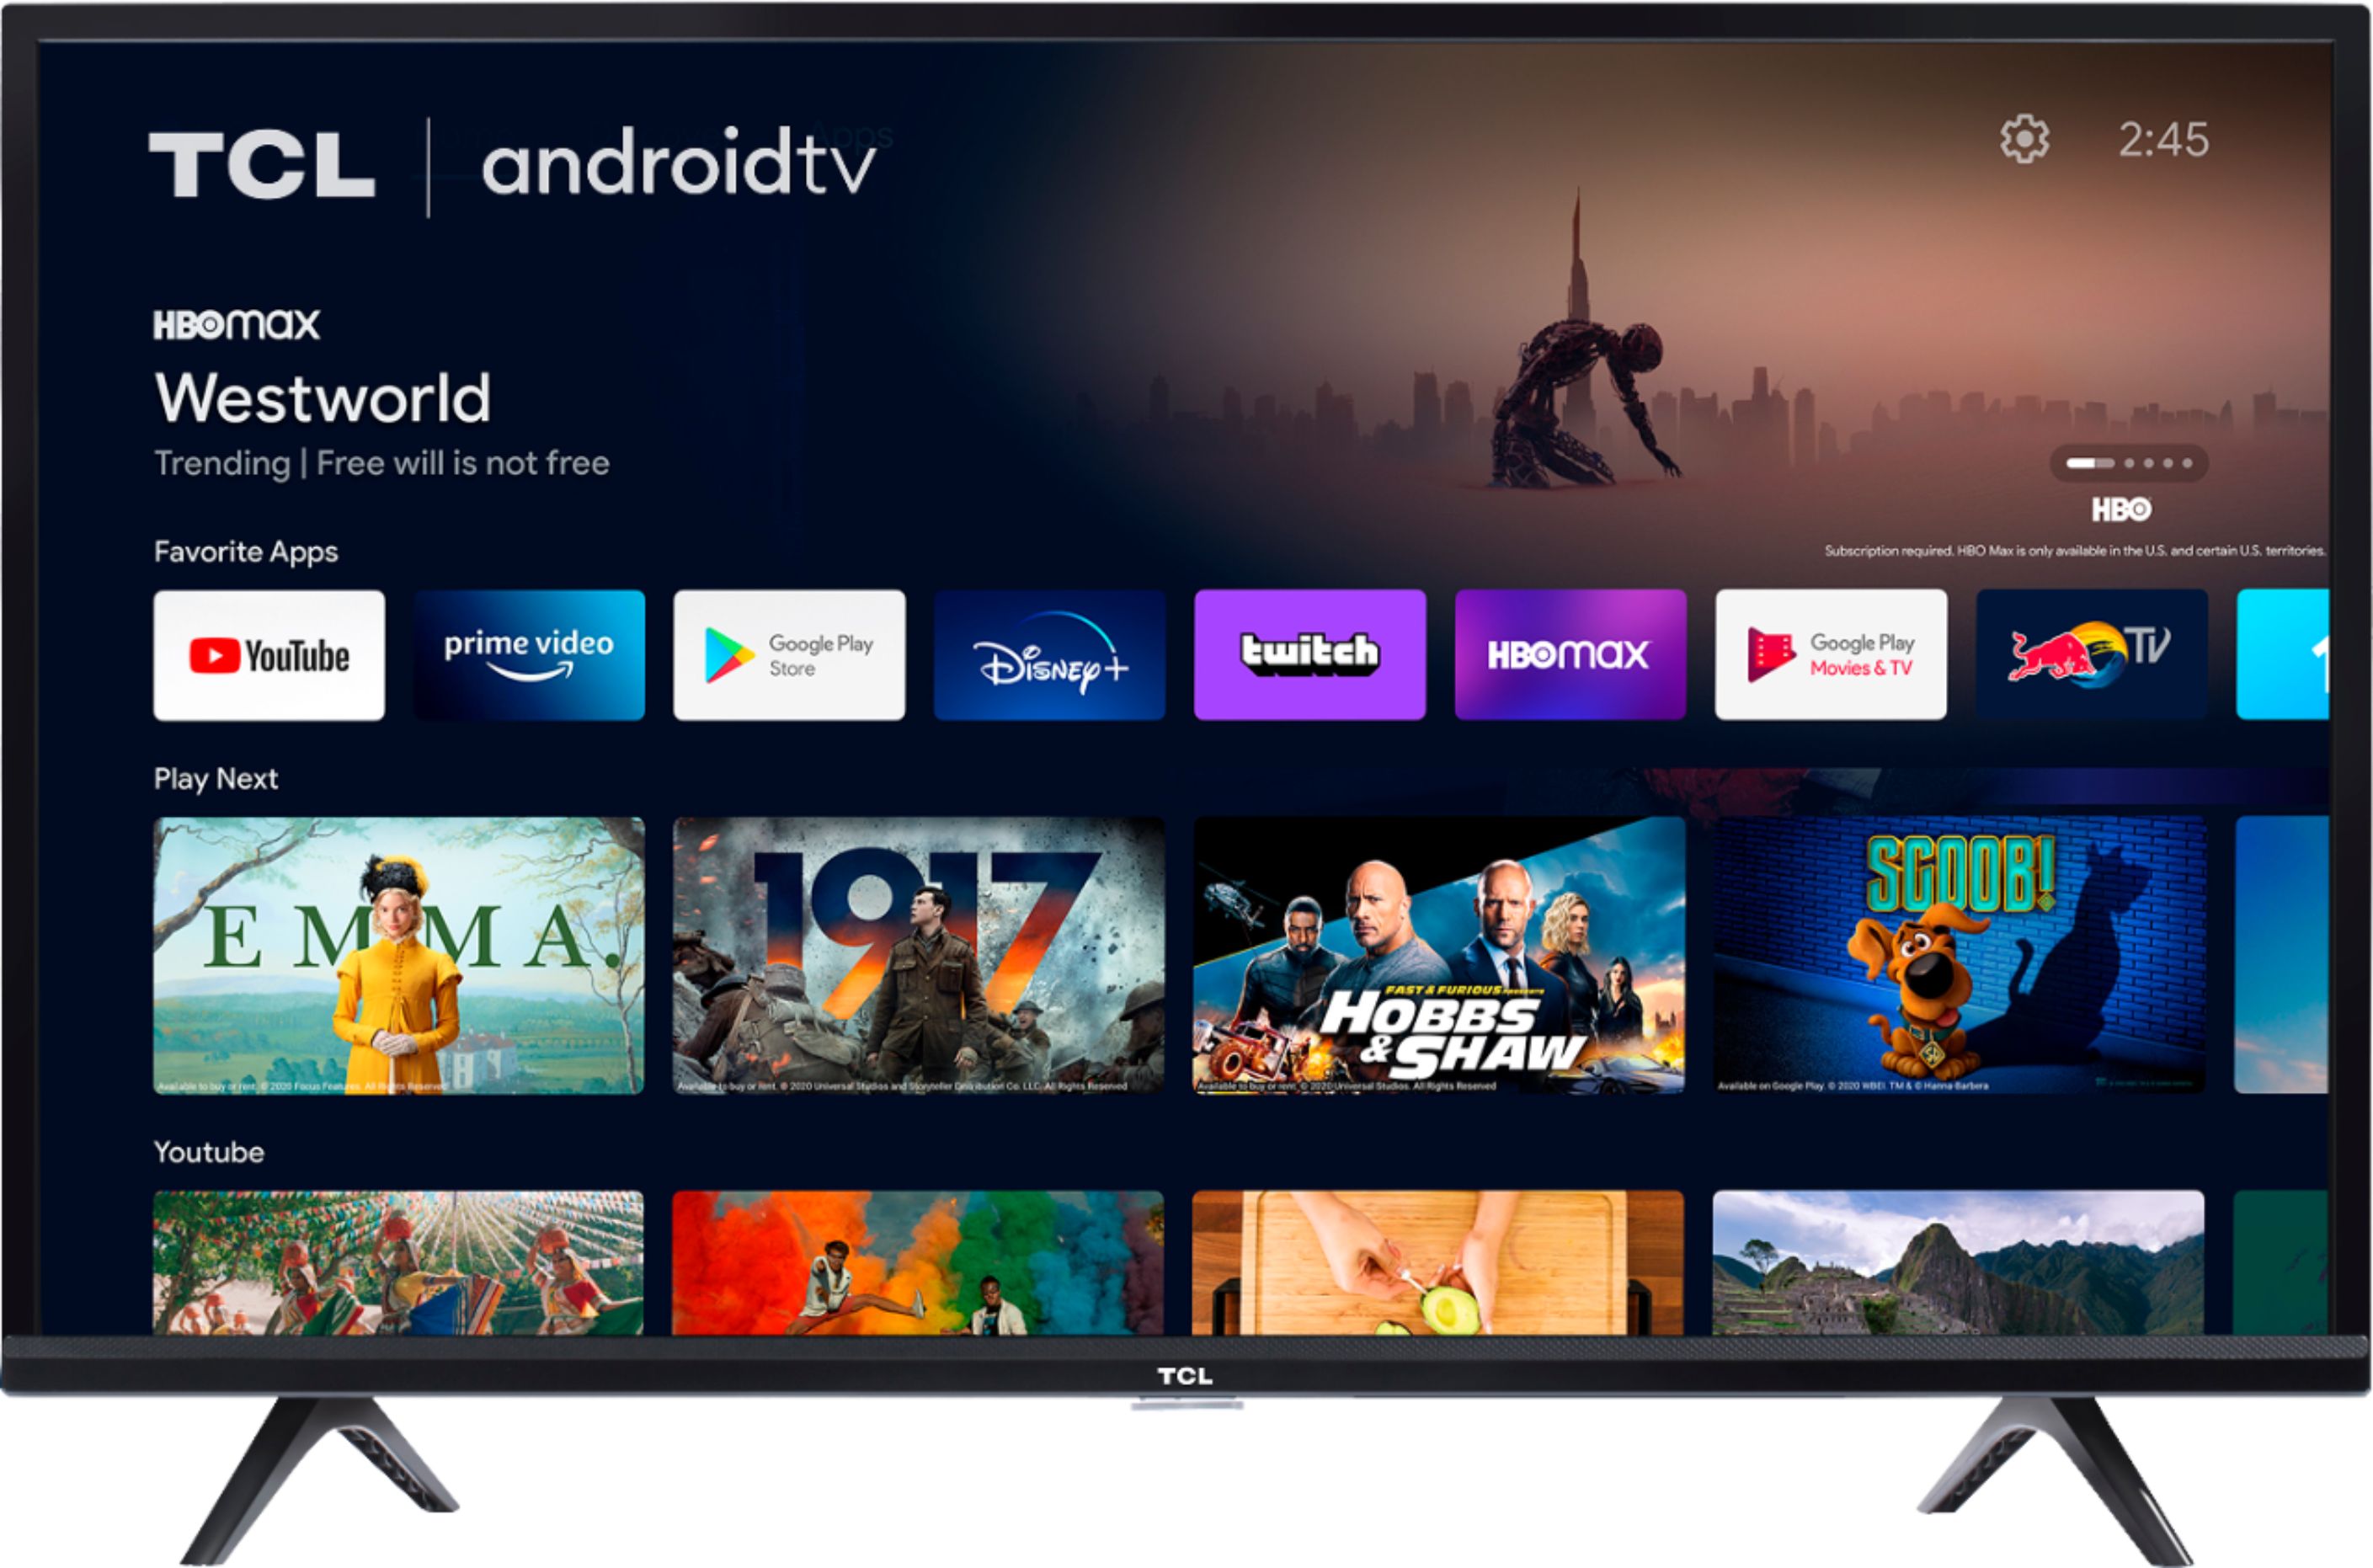 店舗割引 32S515 TCL HD TV) (Android TV Smart テレビ